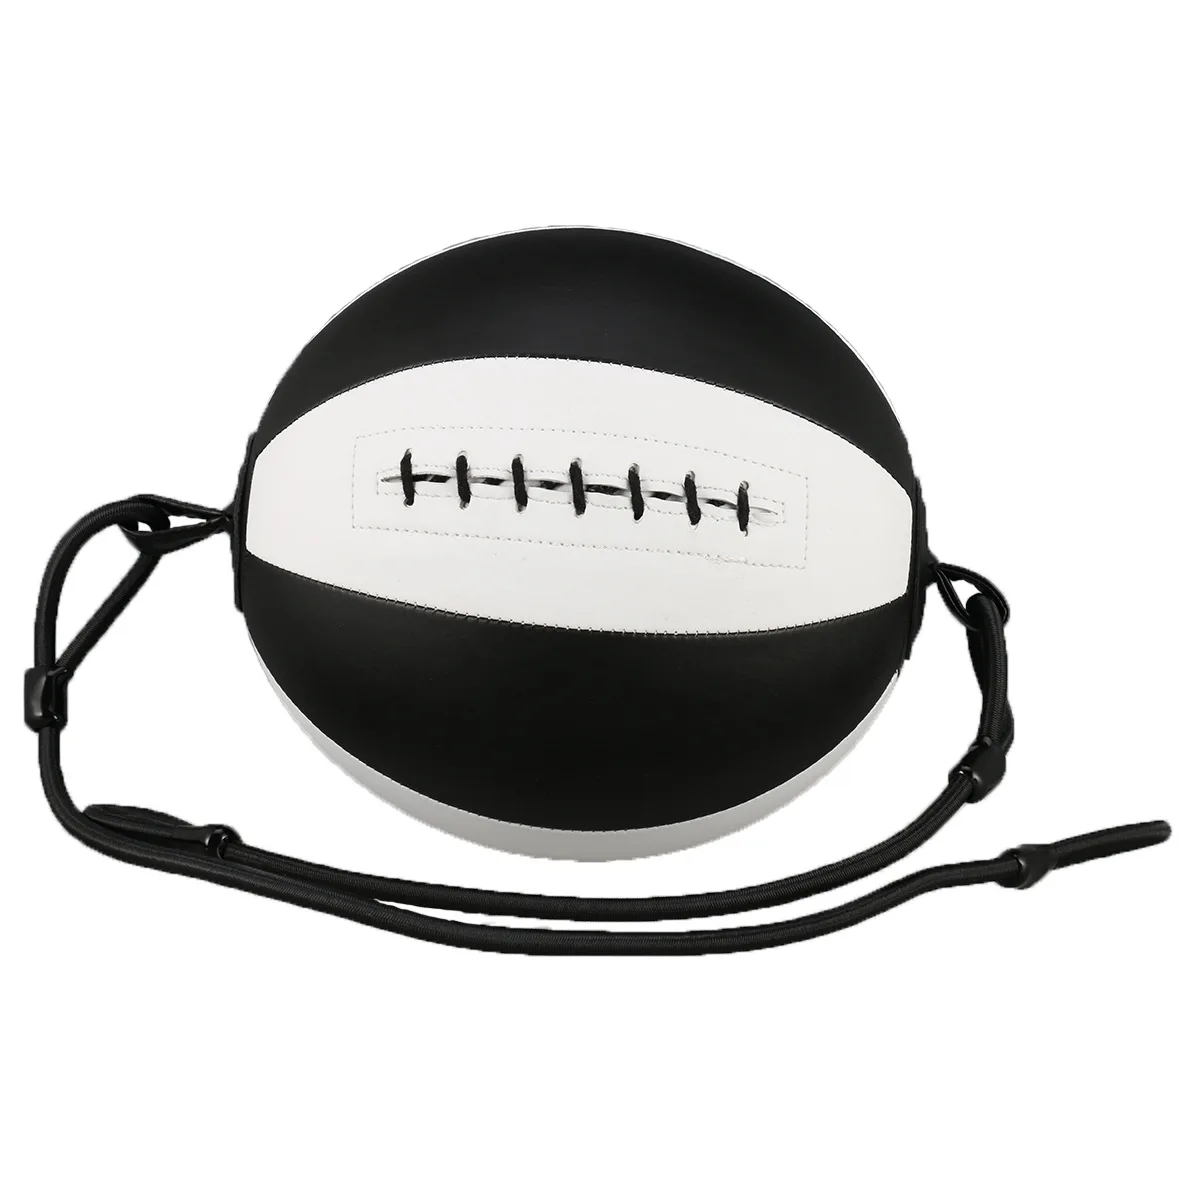 Ebay, Amazon Горячая mumian скоростной мяч прыгающий мяч Бокс Фитнес мяч для бокса вентиляционный релаксационный подвесной